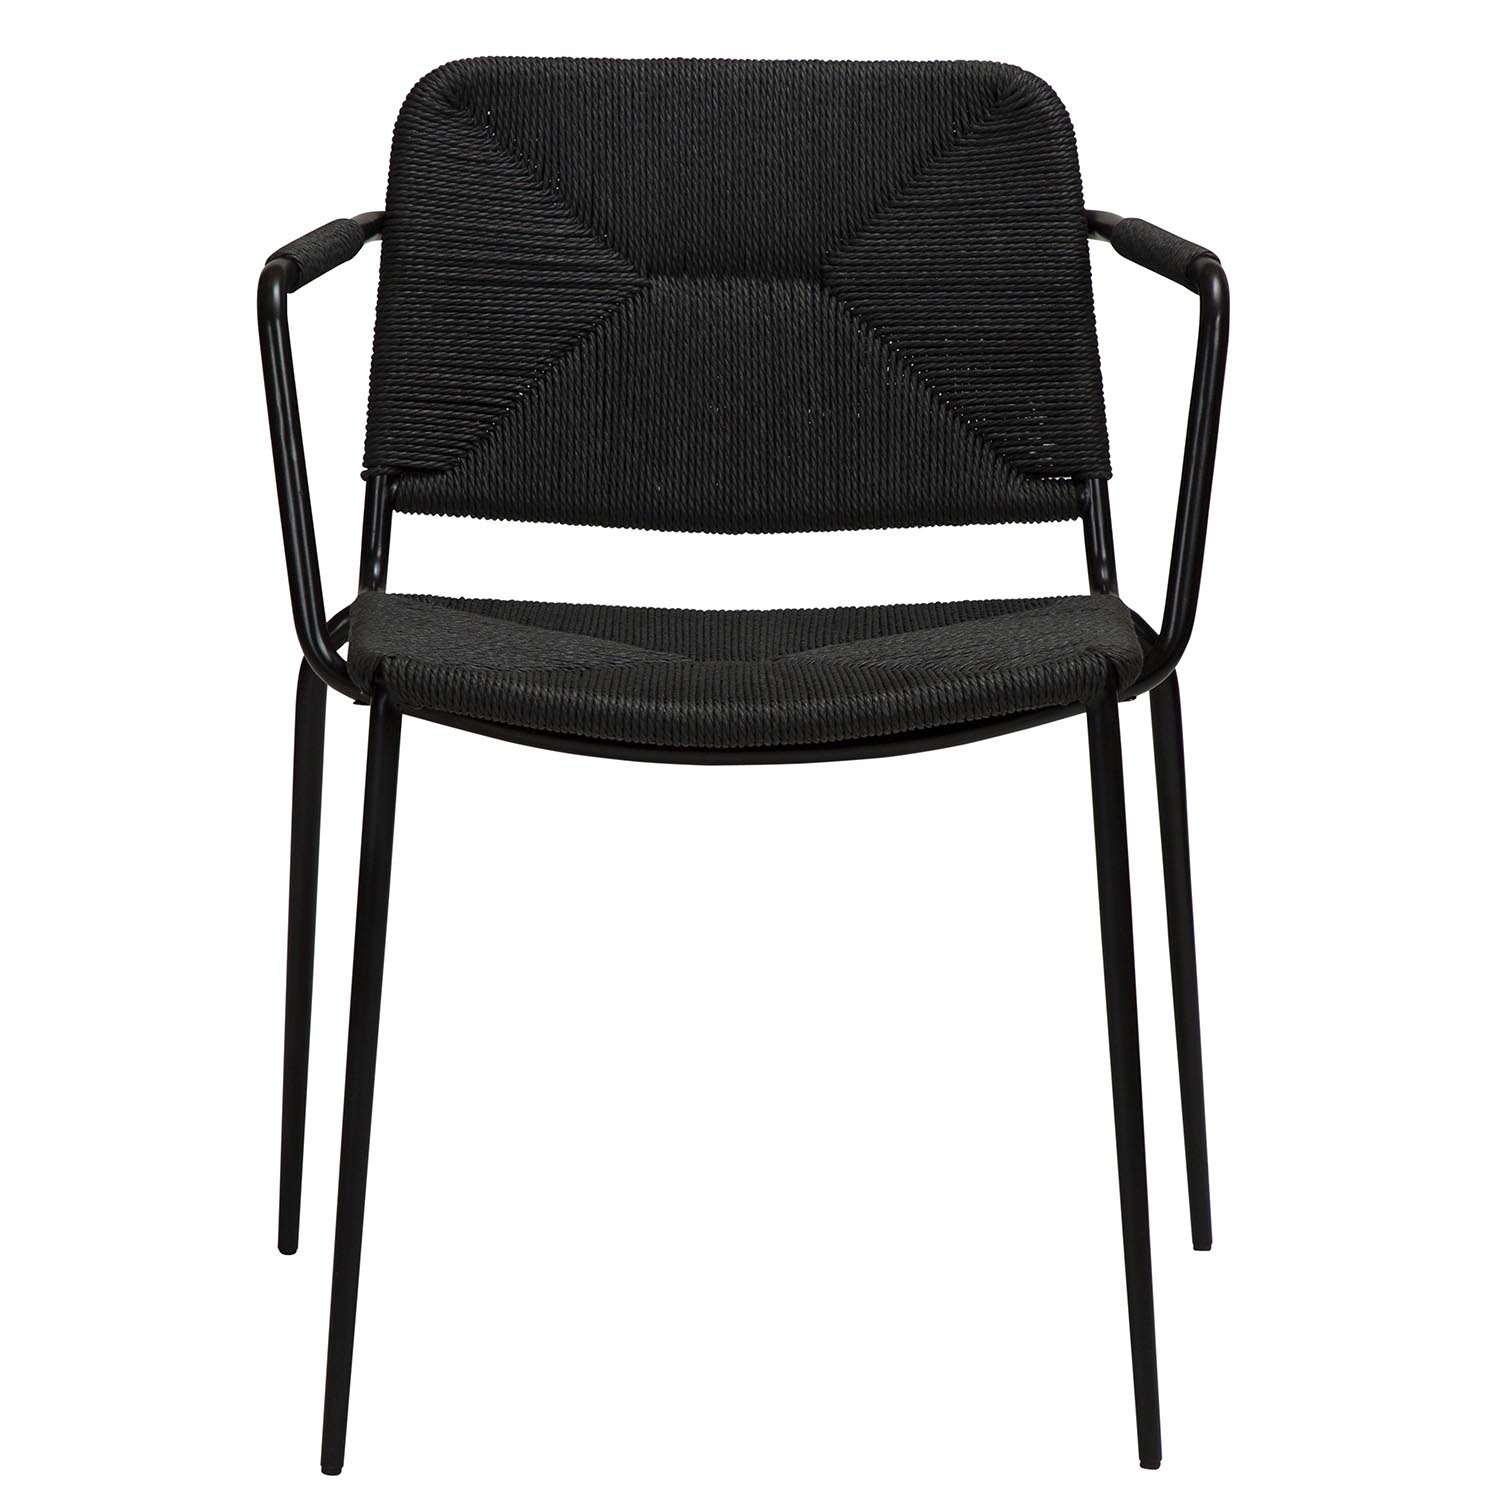 DAN-FORM Stiletto spisebordsstol, m. armlæn - sort papir snor og sort stål